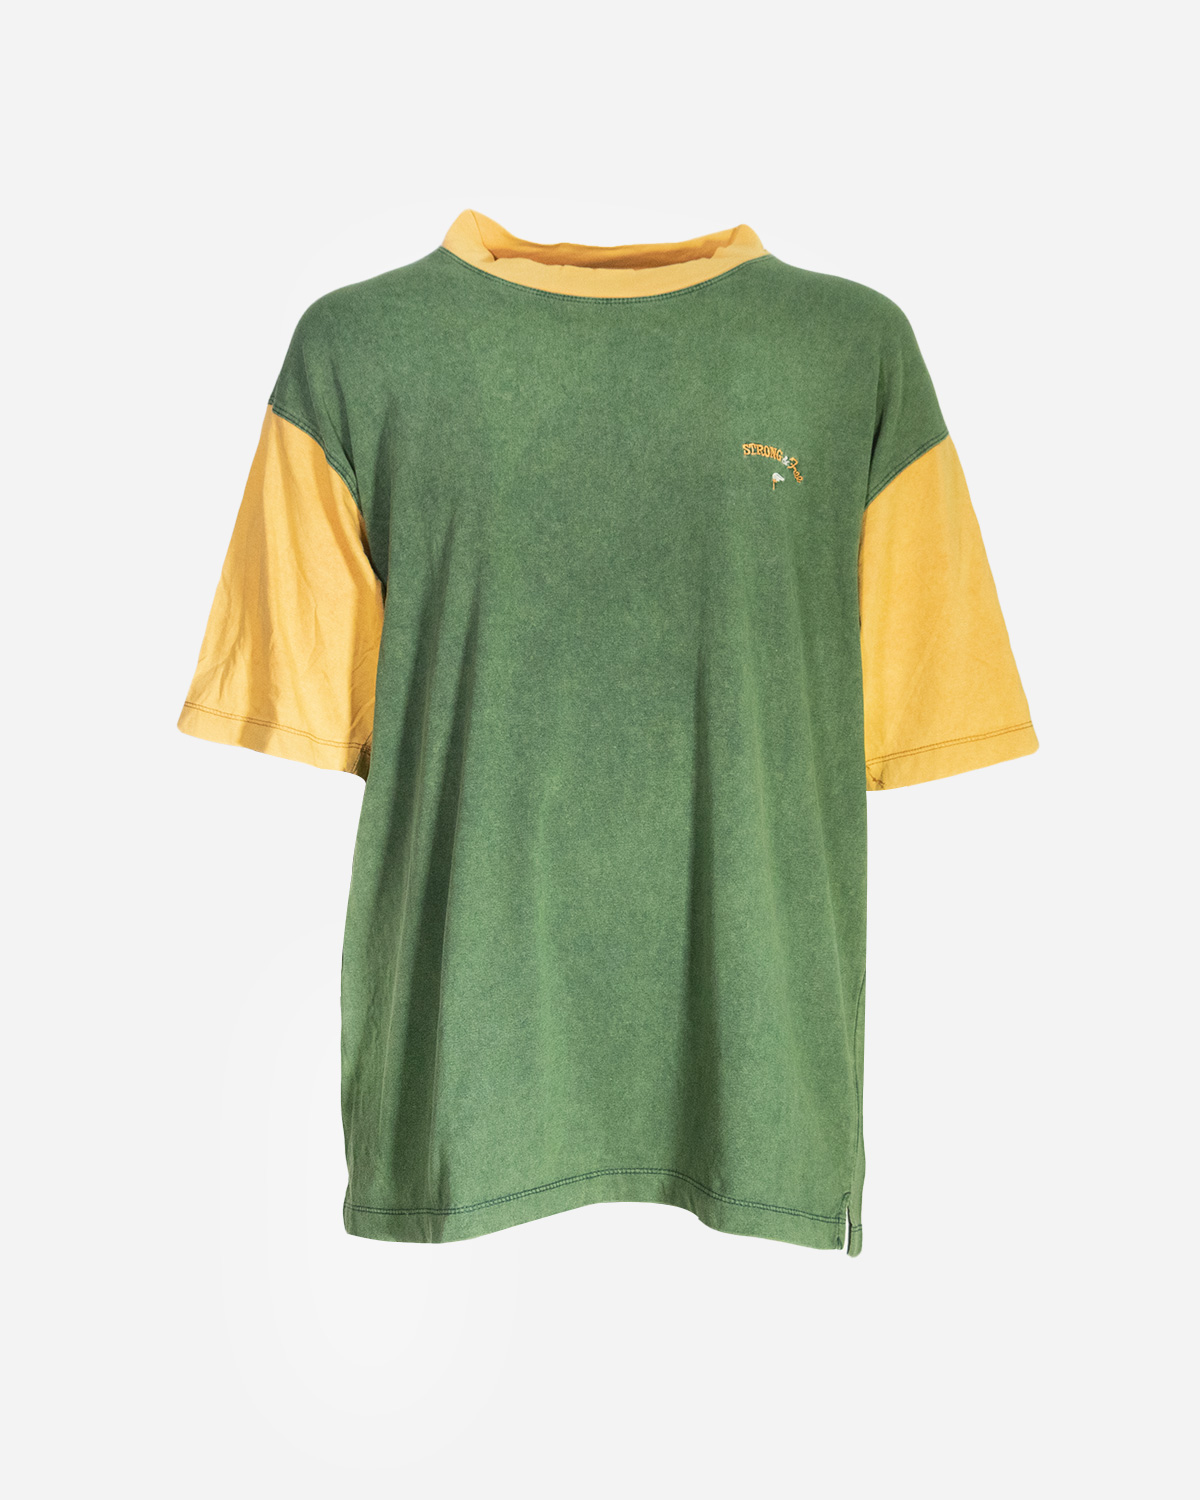 Men’s 80s-90s vintage T-shirts: 4 pieces